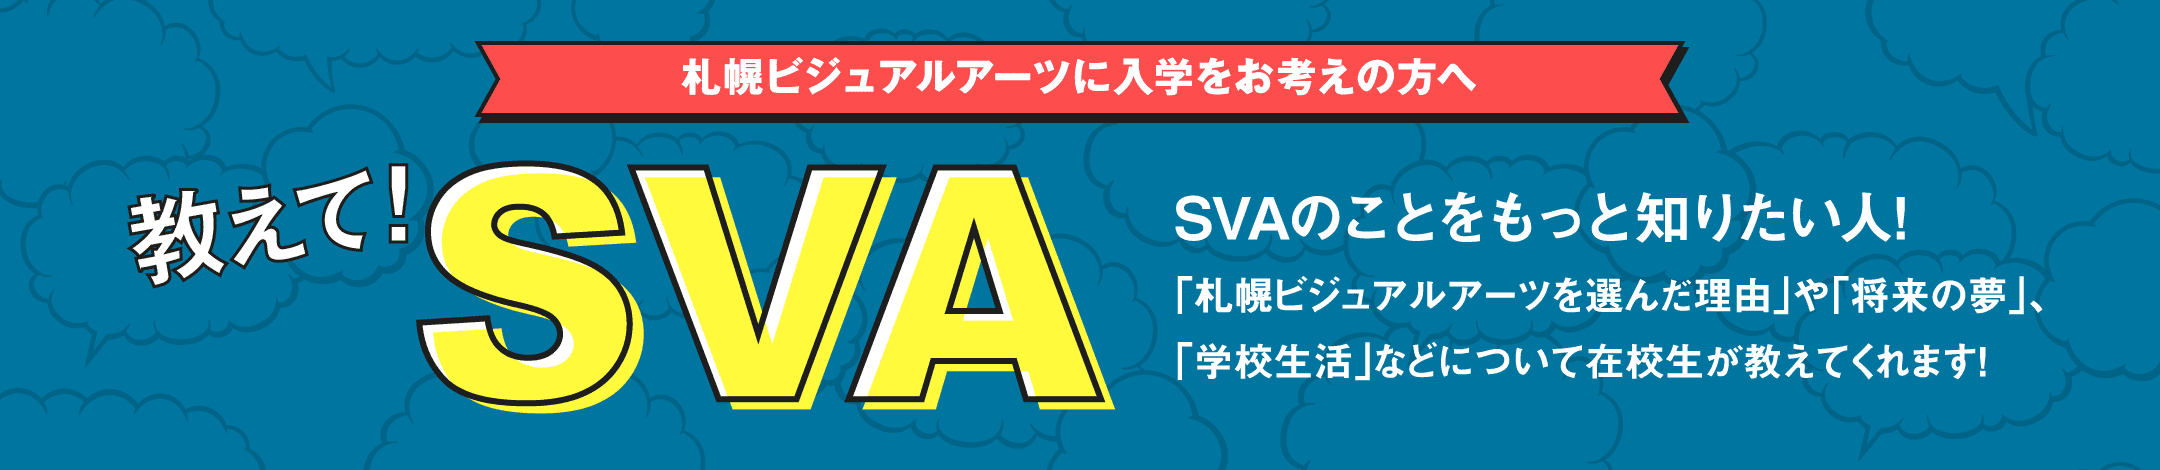 札幌ビジュアルアーツに入学をお考えの方へ 教えて!SVA